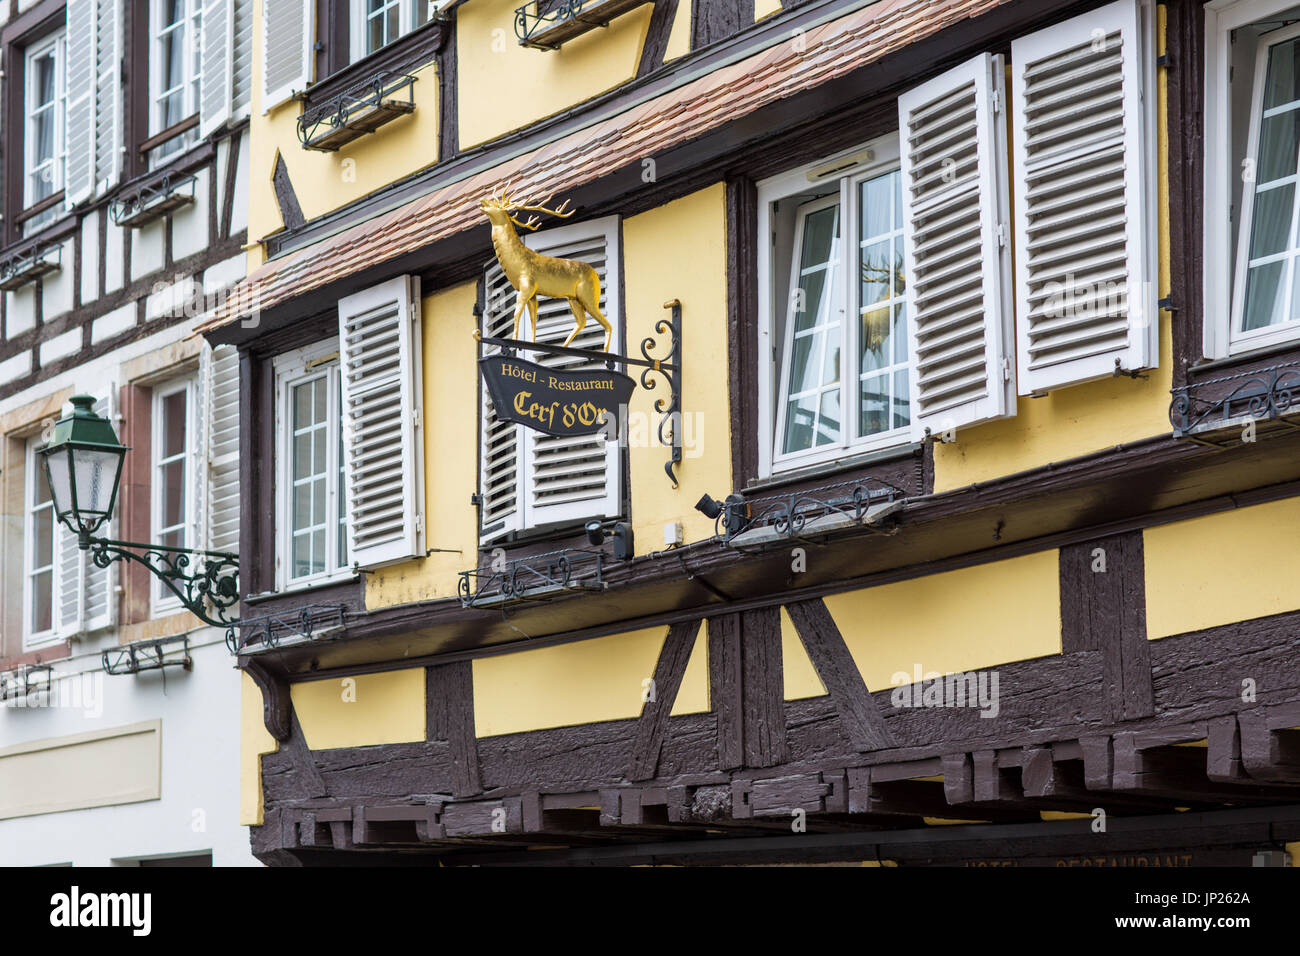 Straßburg, Elsass, Frankreich - 3. Mai 2014: Hotel Cerf d ' or, typische halbe Fachwerkhaus Gebäude des Elsass in Straßburg. Straßburg ist die Hauptstadt der Region Grand Est (ehemals Elsass) von Frankreich und der offizielle Sitz der Europäischen Union. Stockfoto